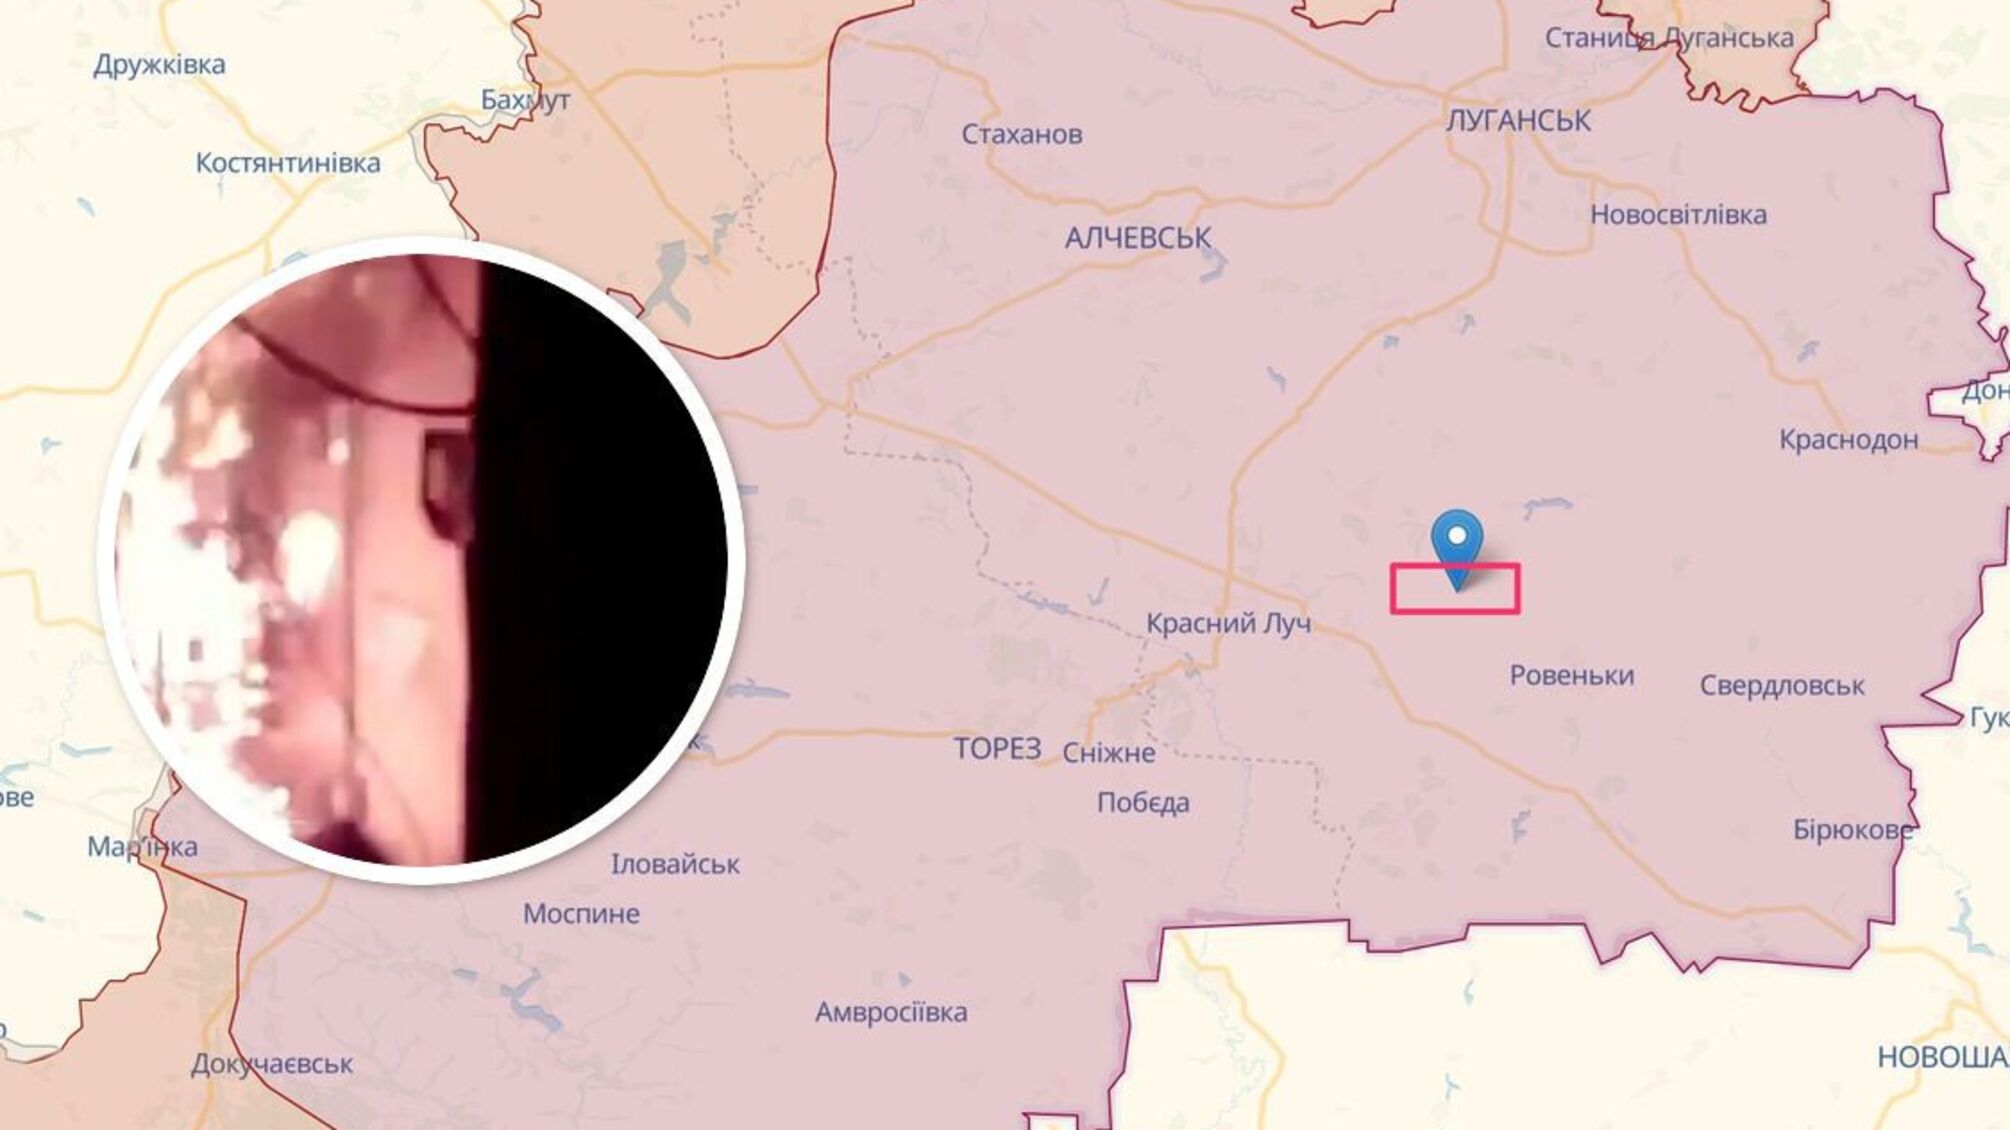 Горит-пылает: на оккупированной Луганщине партизаны подожгли пункт управления железной дорогой (видео)